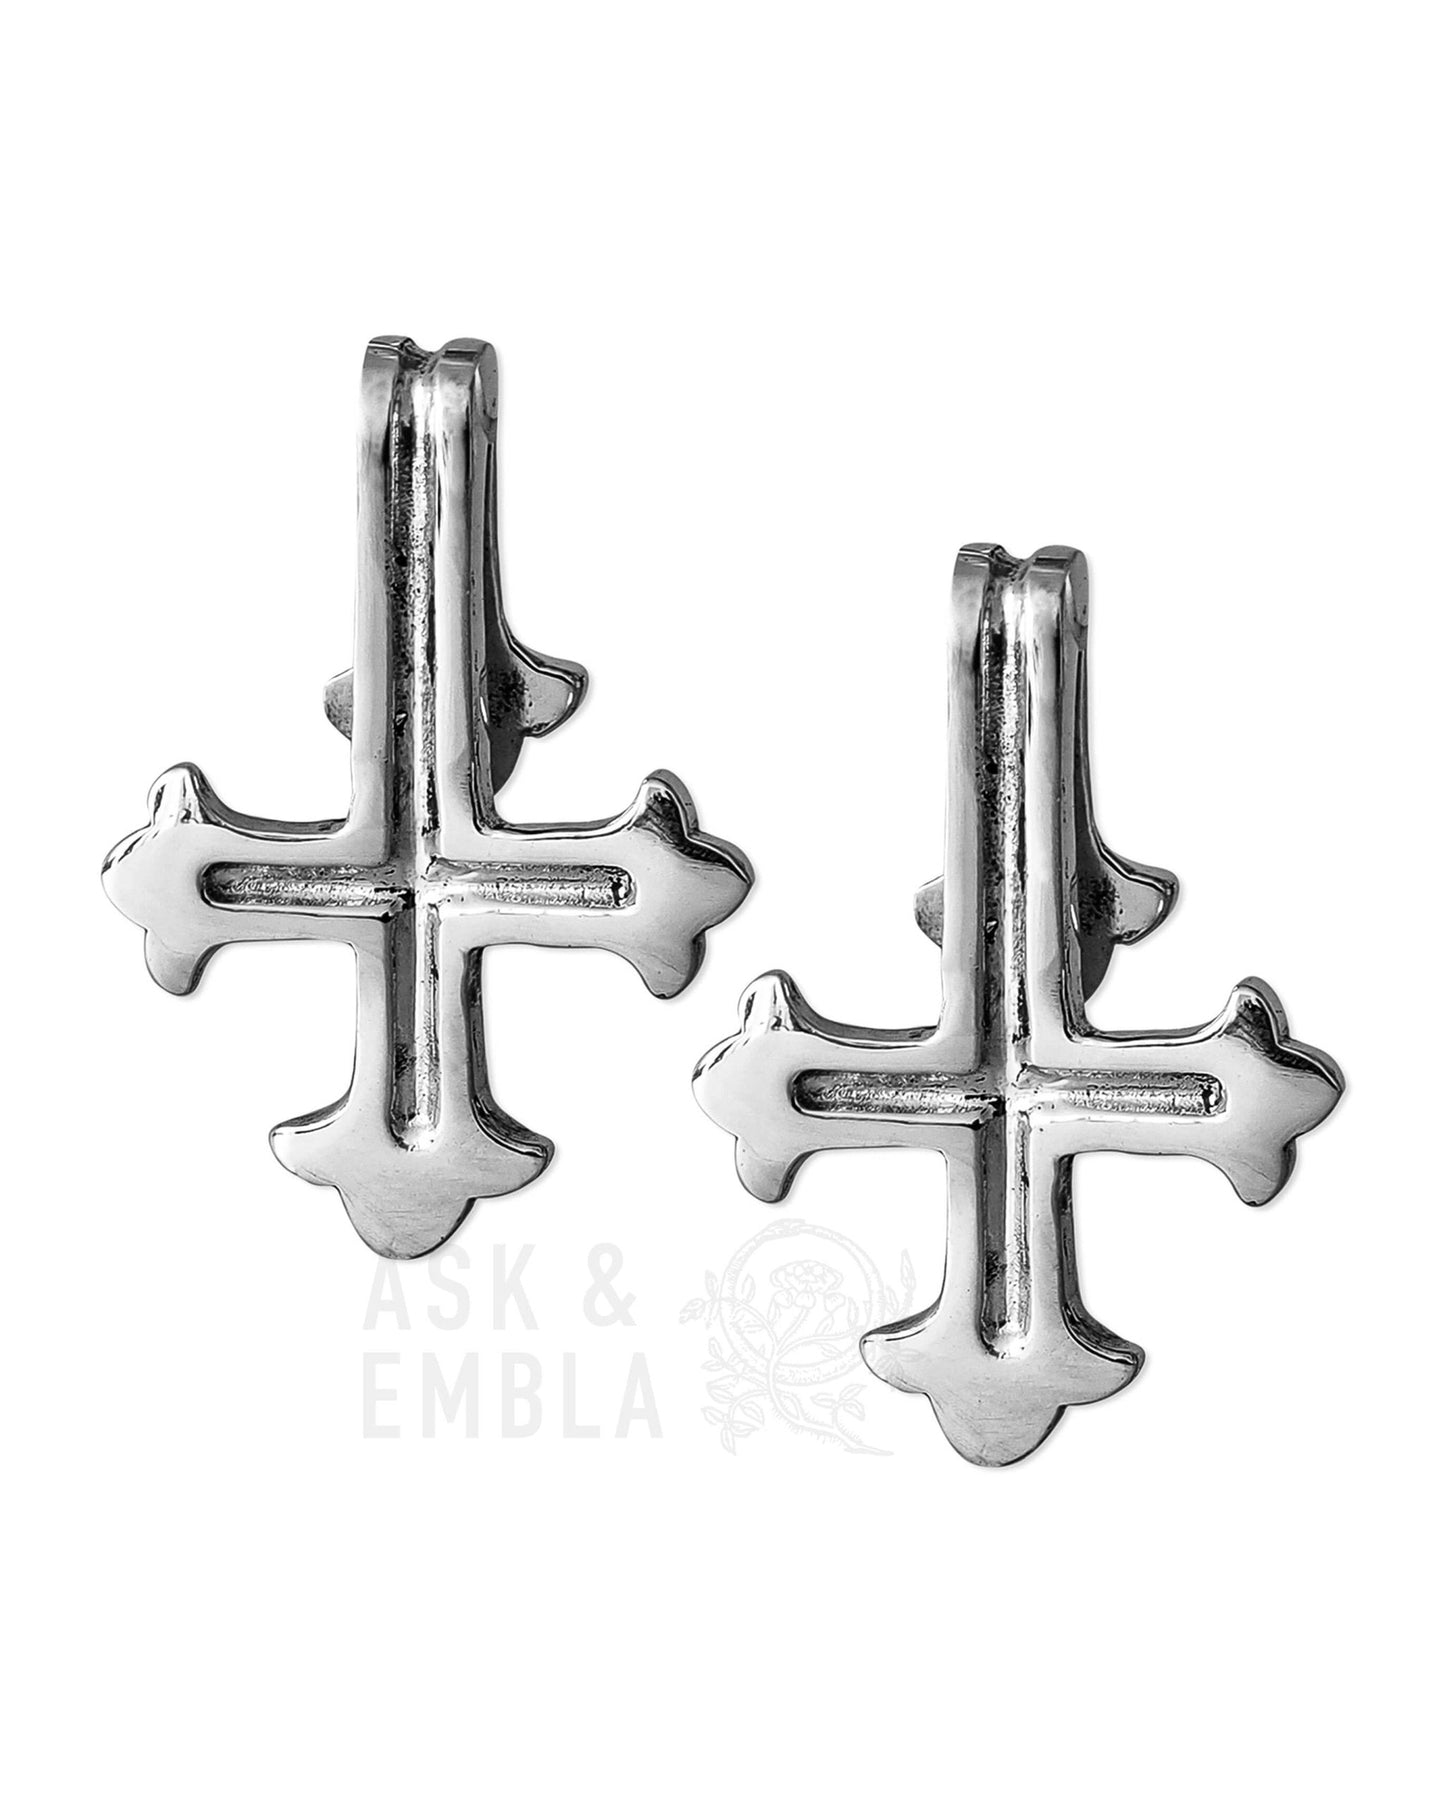 Judah Cross Hangers - Hangers - Ask and Embla